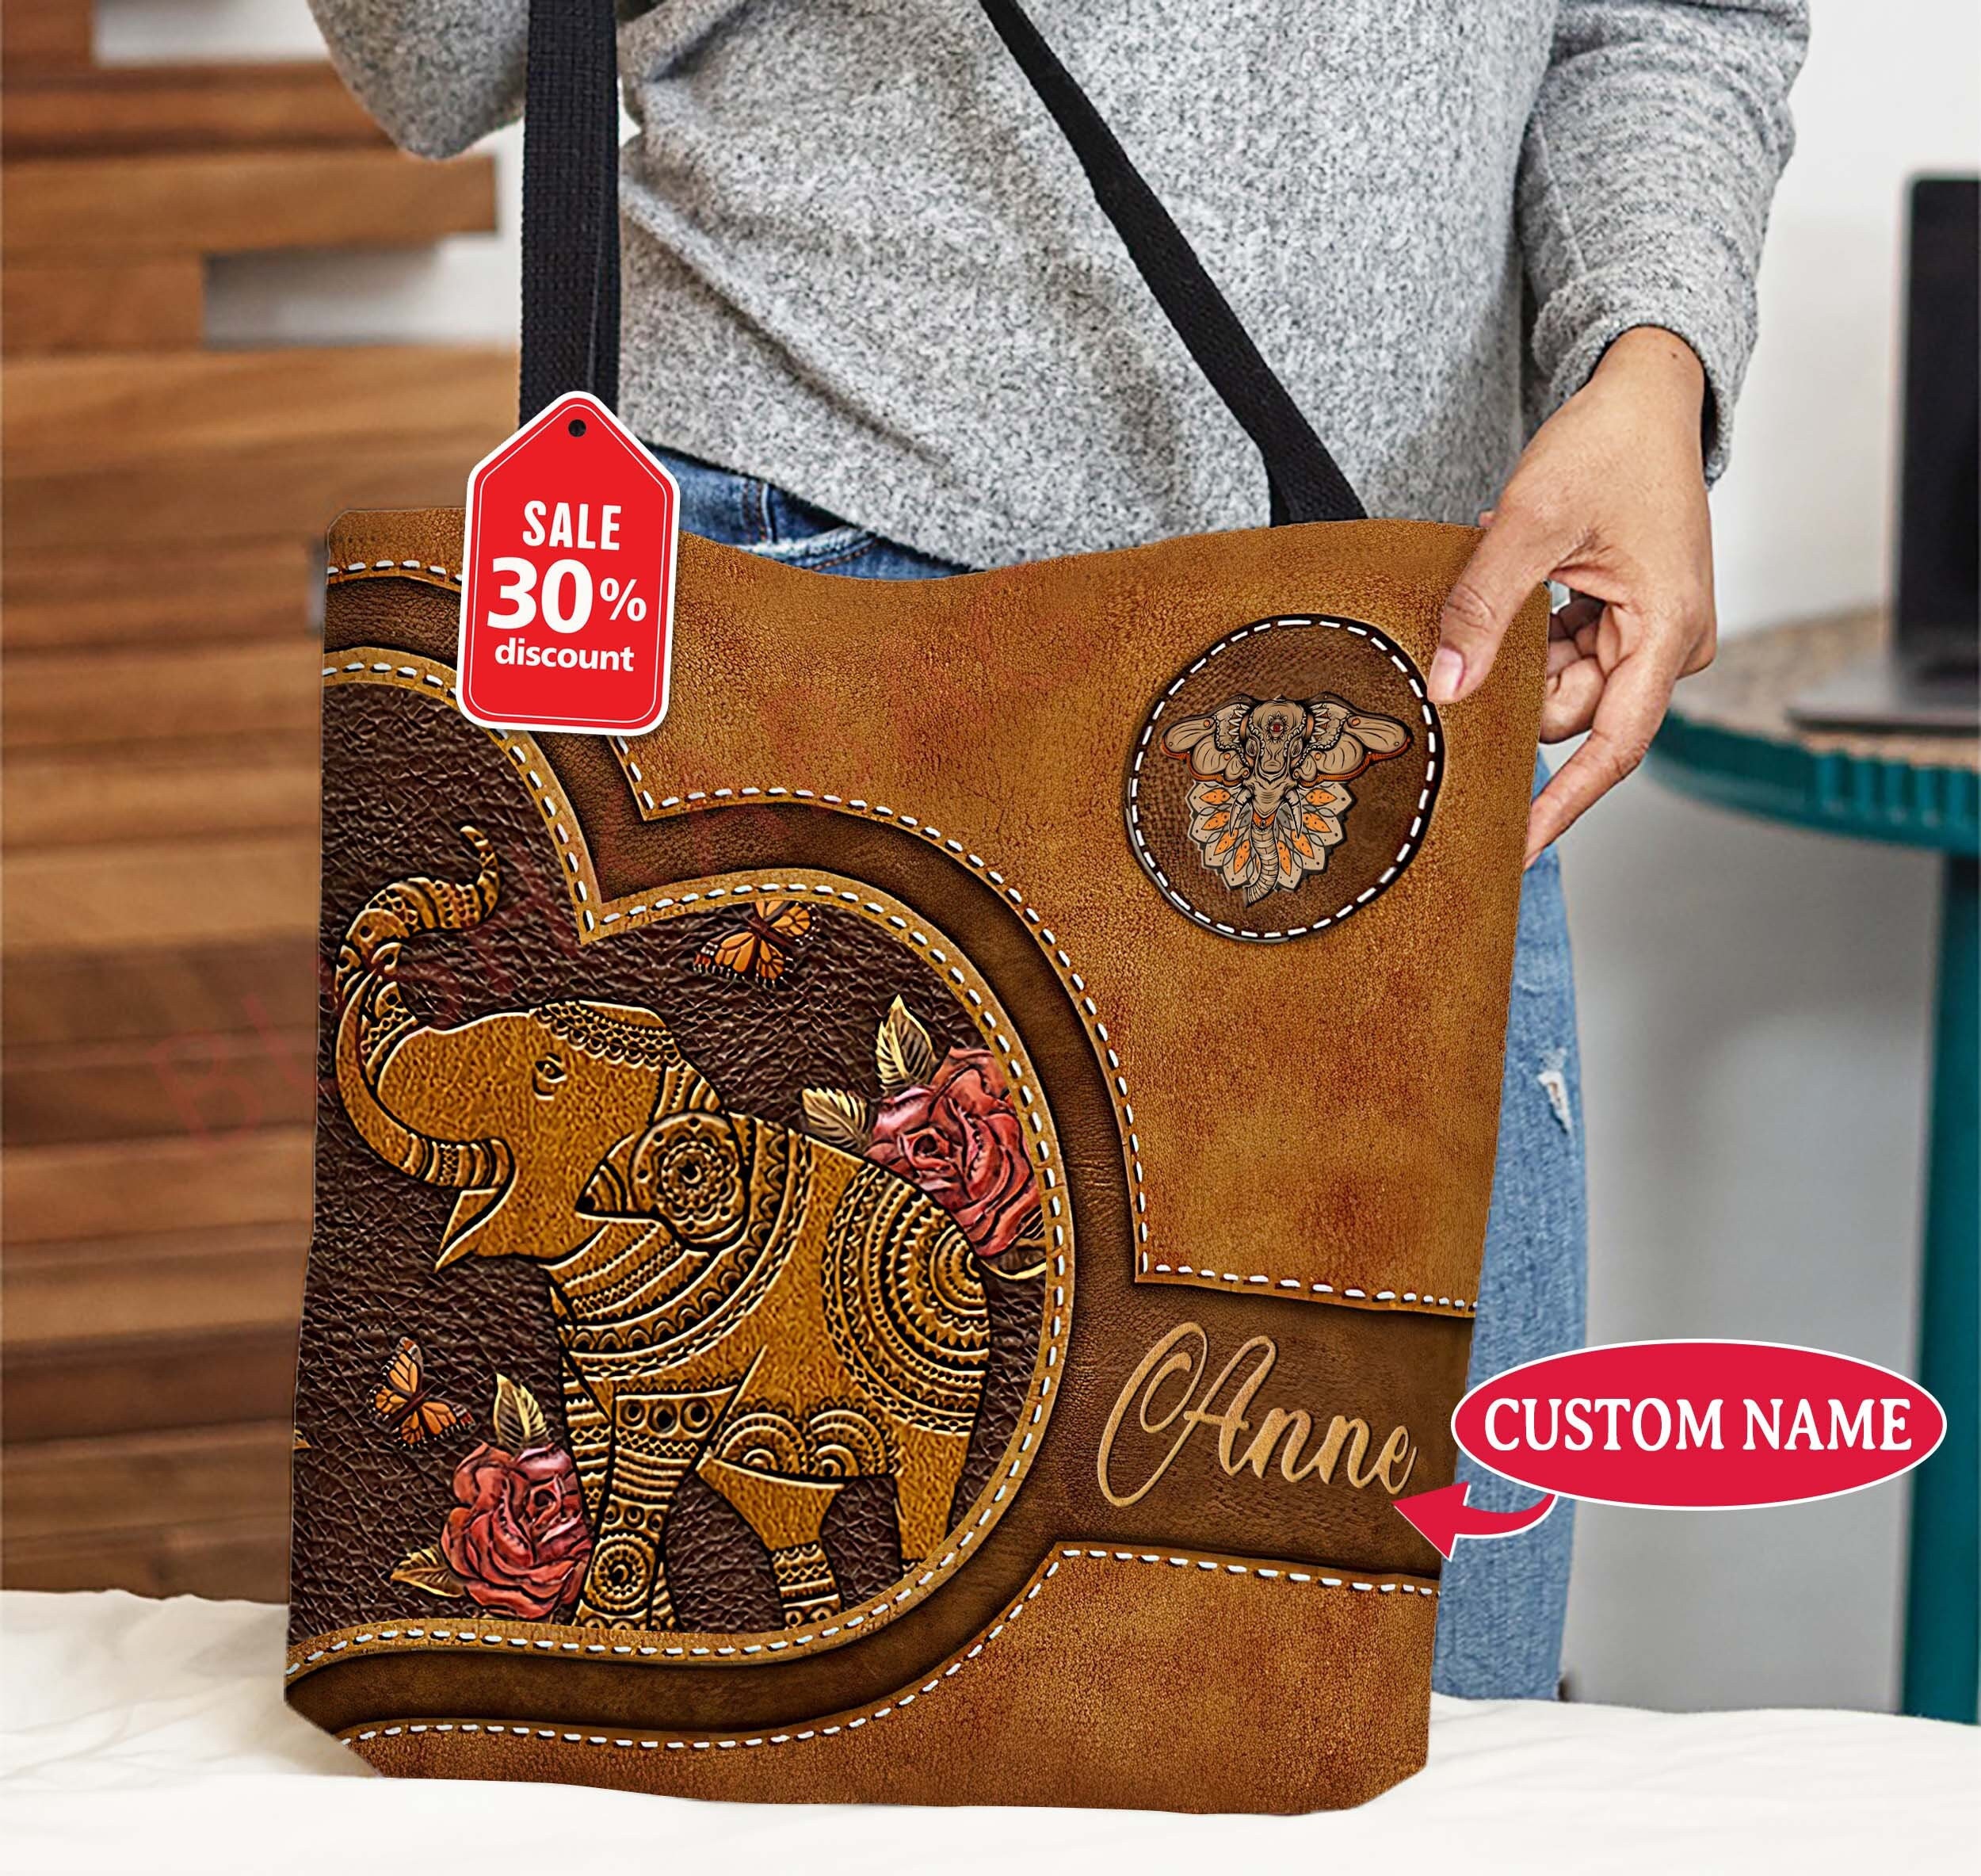 Personalized Elephant Tote Bag, Elephant Handbag, Elephant Shoulder Bag,  Elephant Lovers Gift, Elephant Bag, Vintage Elephant Gift UH340